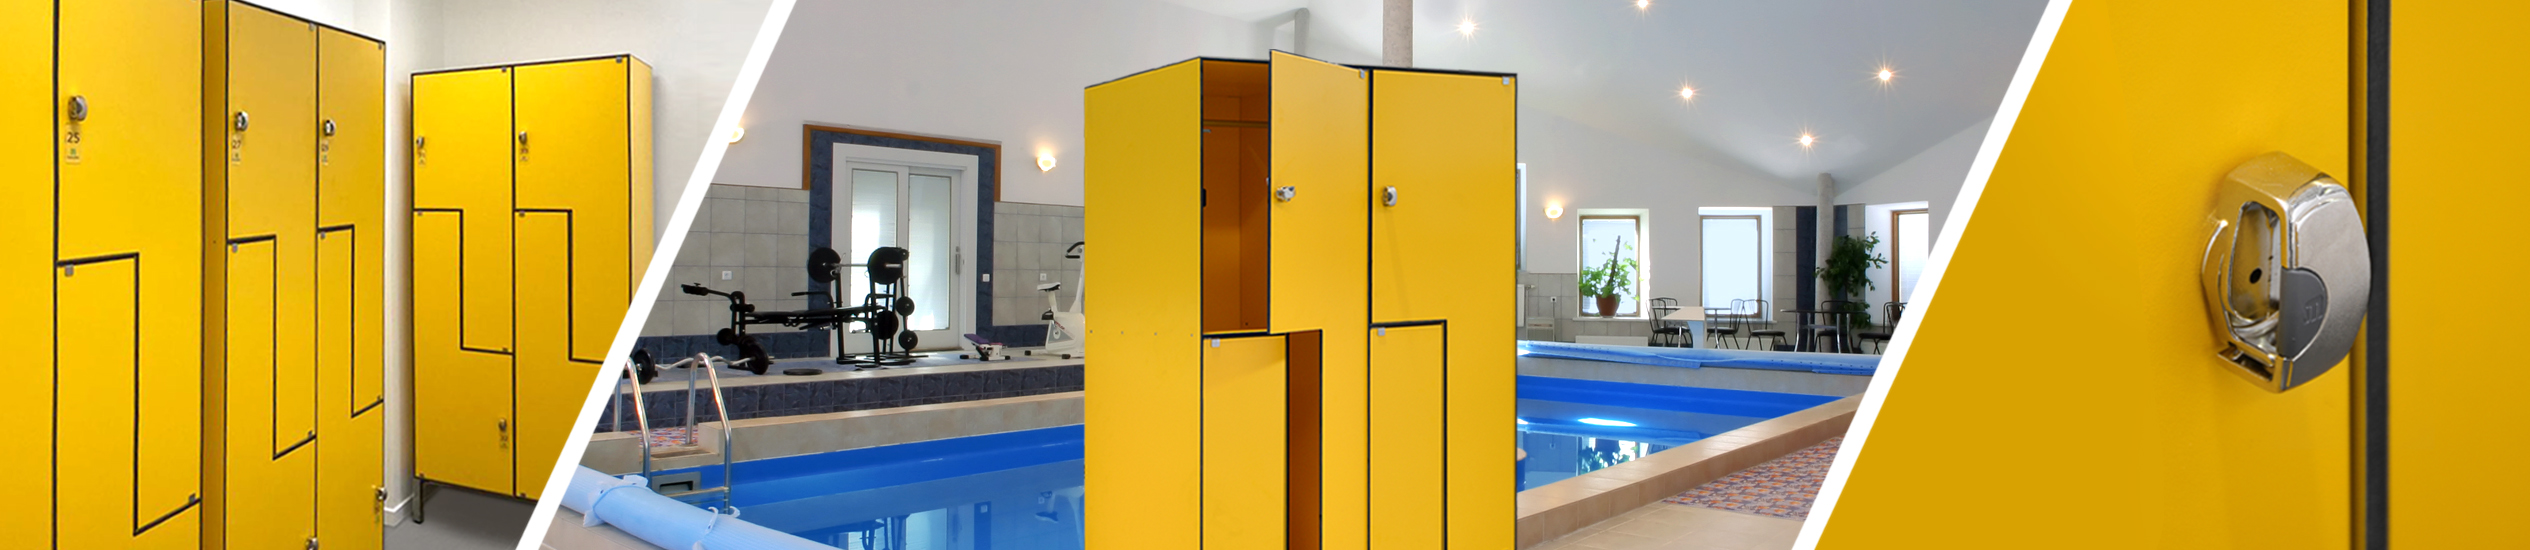 Produzione, vendita e montaggio di arredi su misura in HPL: armadietti, lockers per spogliatoi, pareti divisorie modulari e moduli bagno